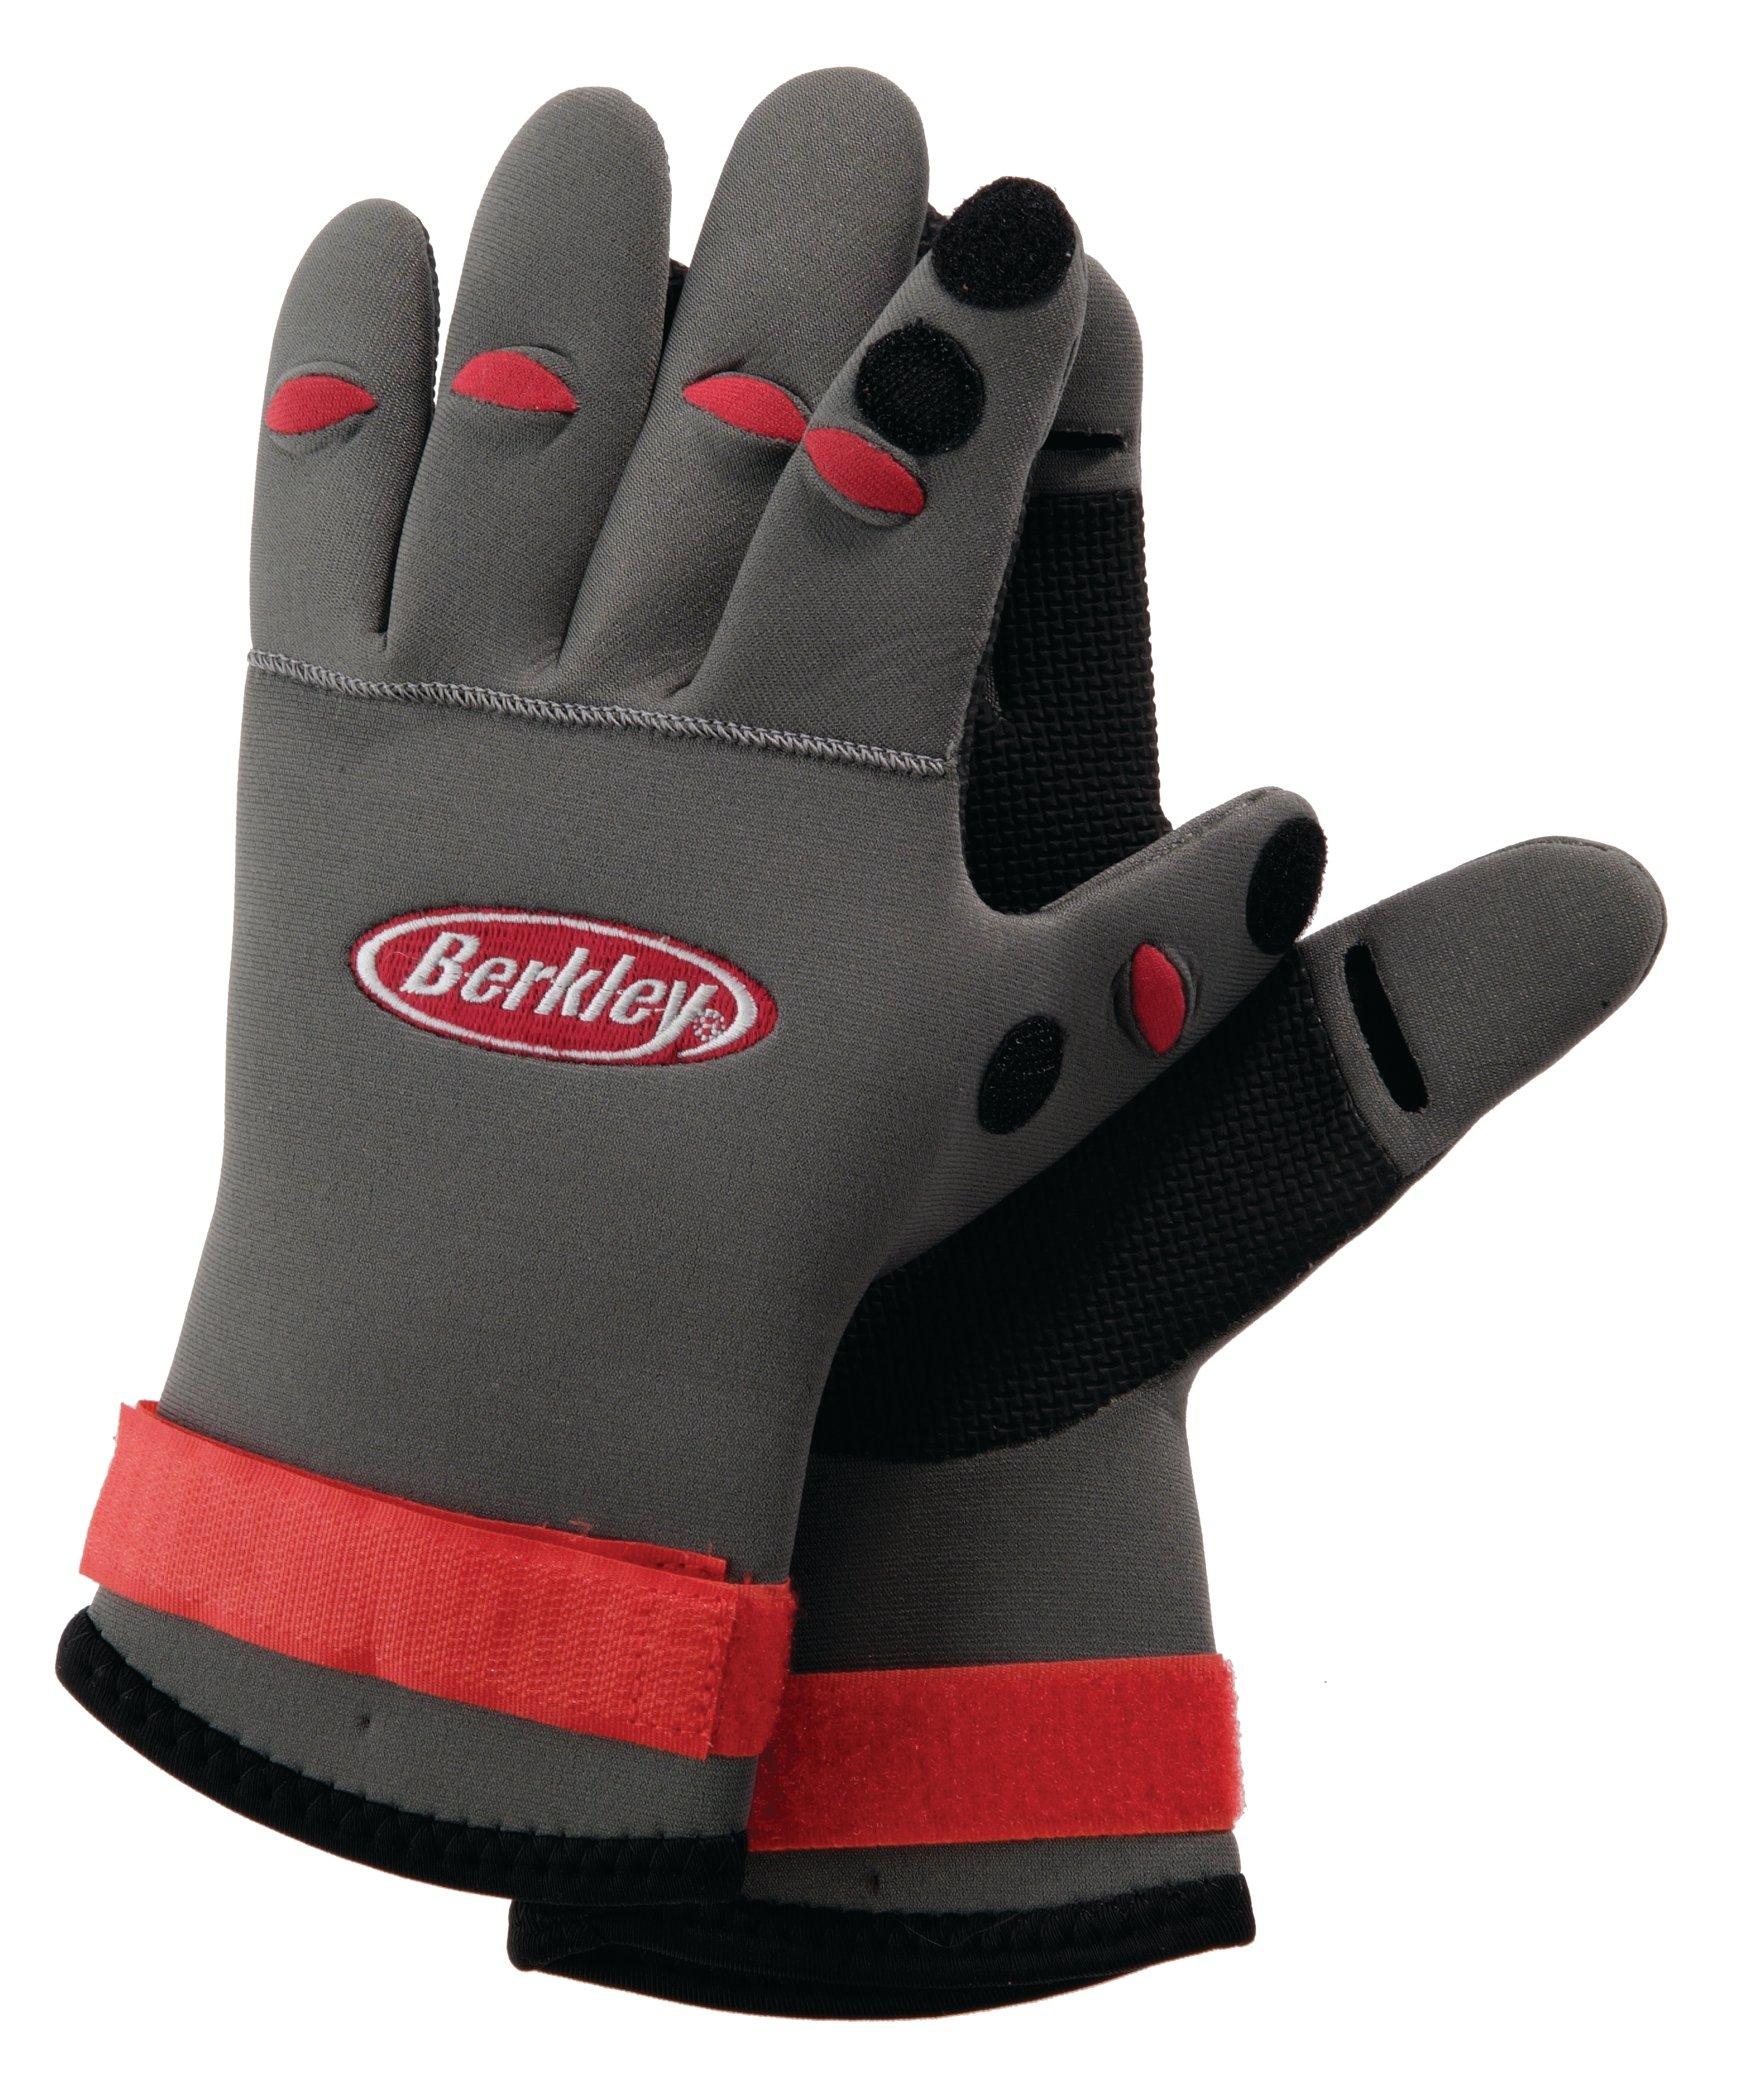 SAWANS® Neoprene Fishing Gloves Folding Fingers Waterproof Rubber Grips Shooting 